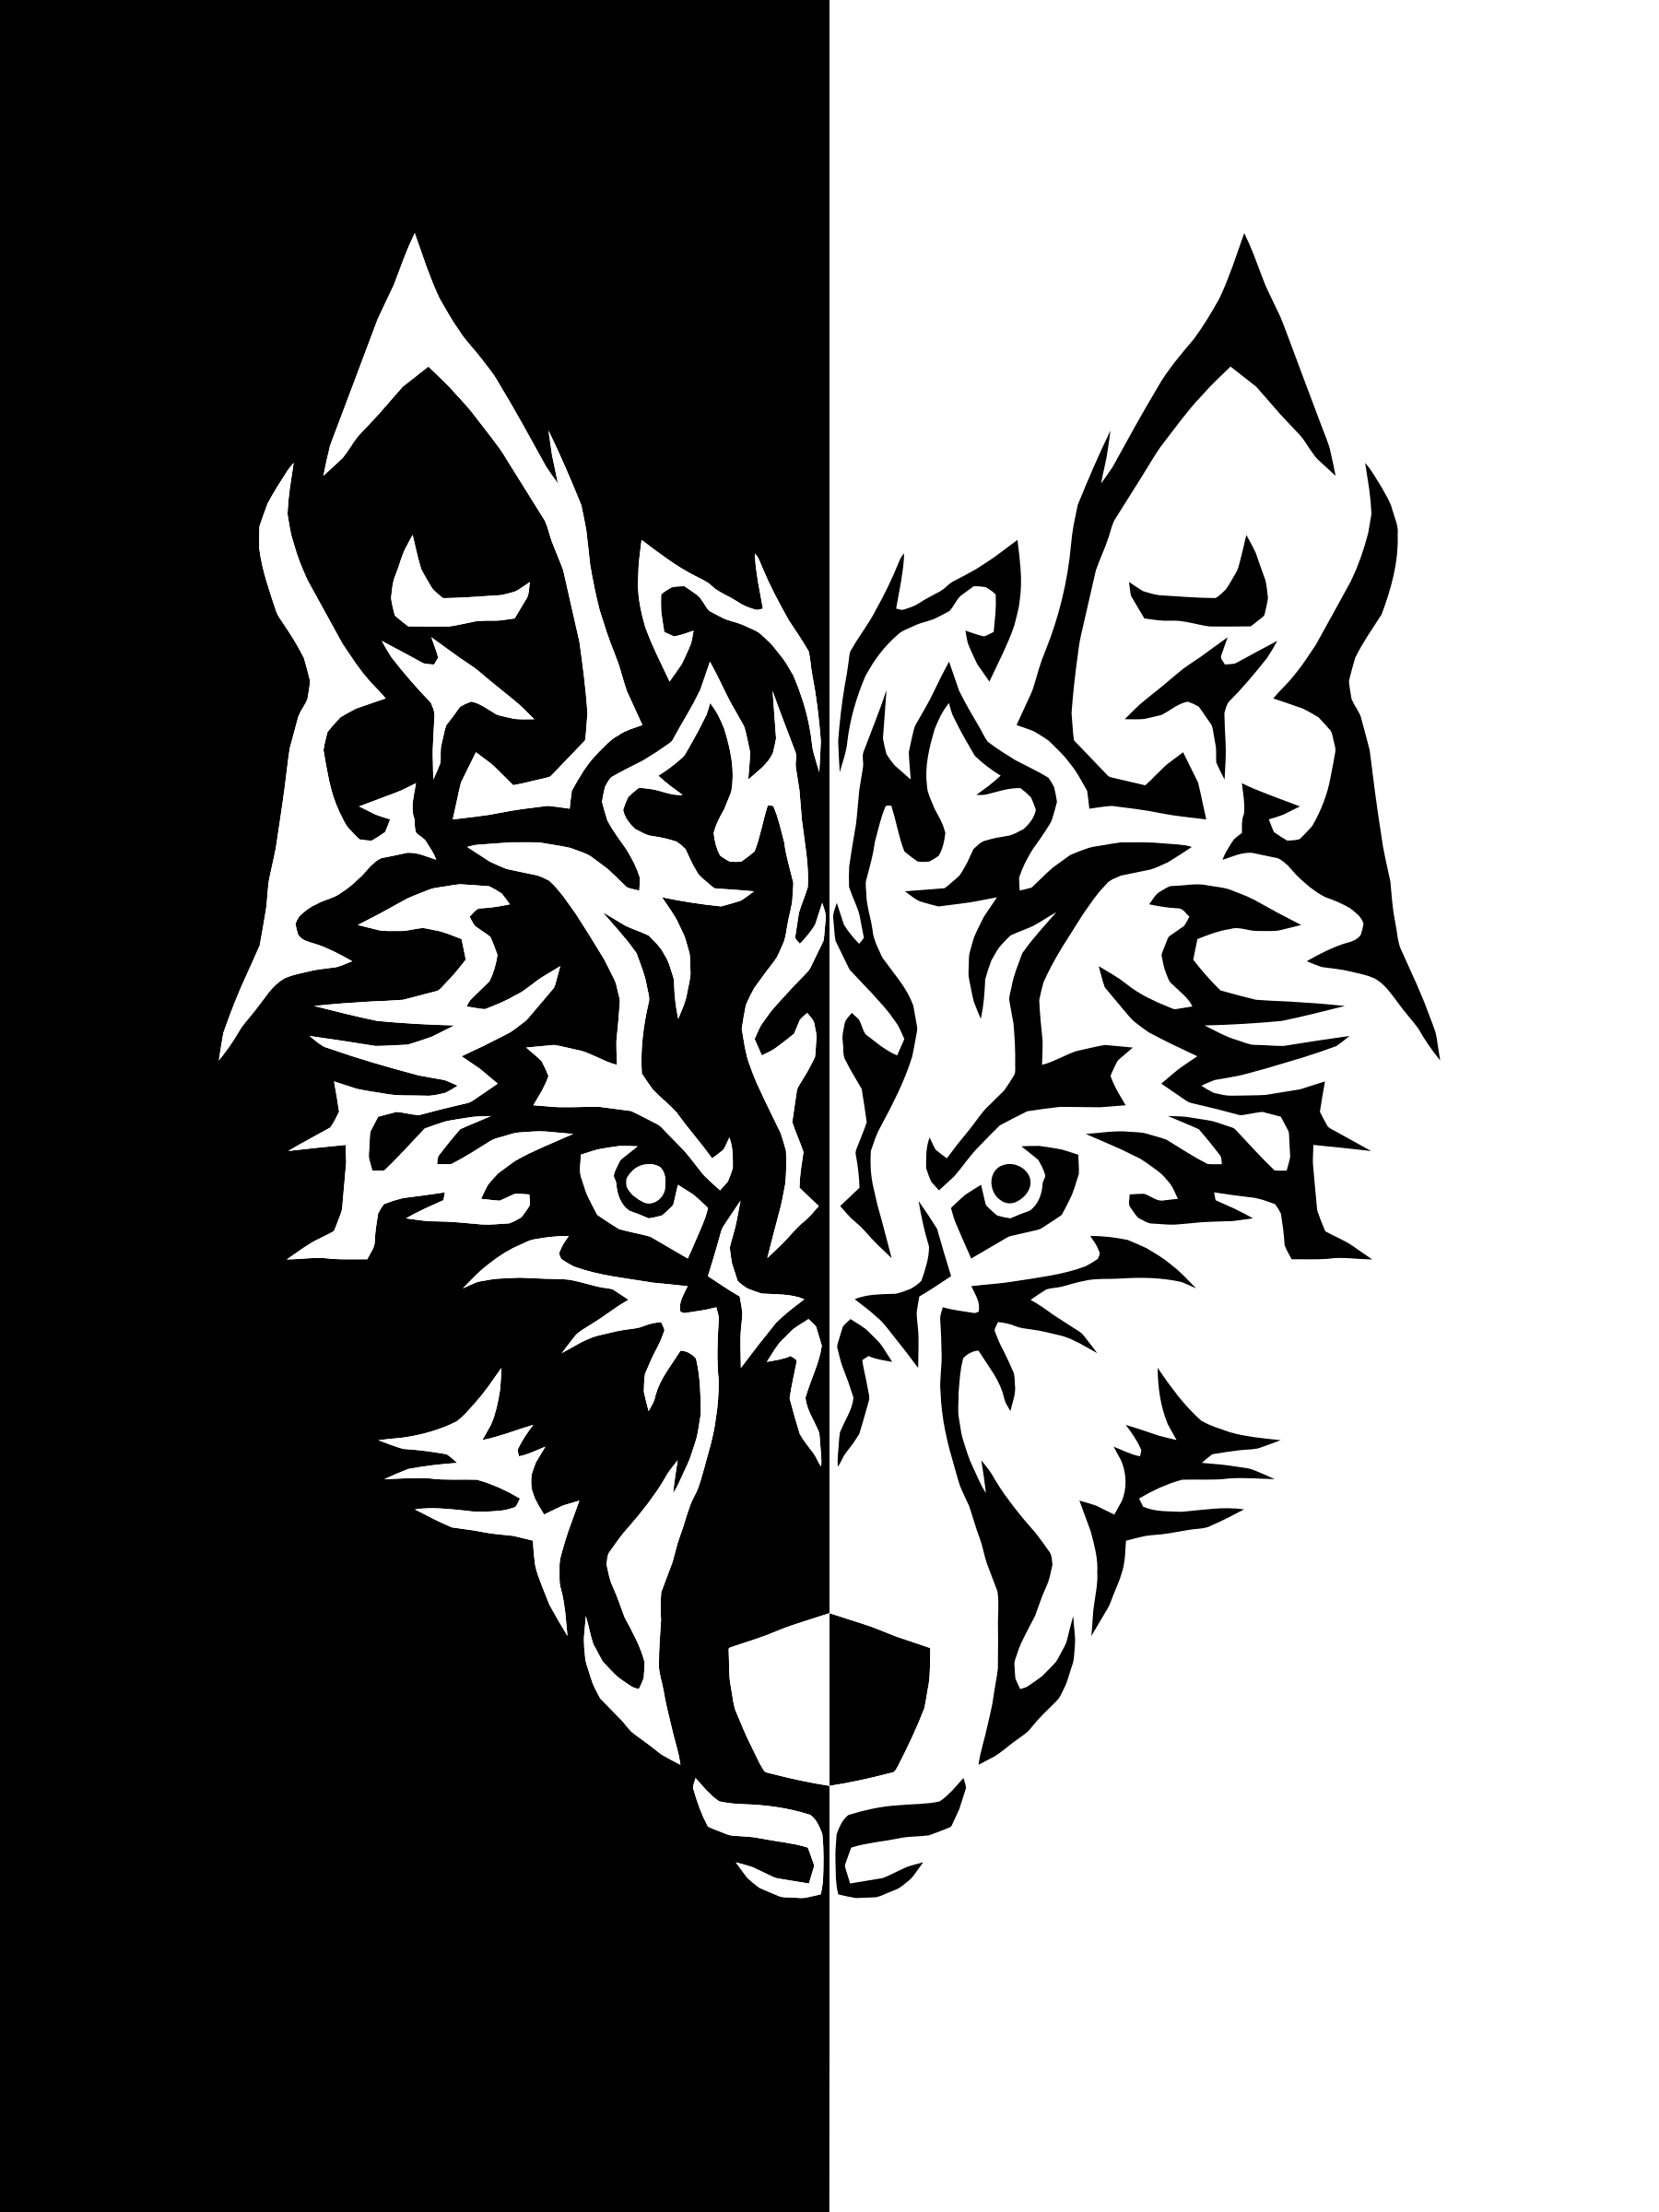 Black and White Wolf Logo - Black And White Wolf PNG Transparent Black And White Wolf.PNG Images ...